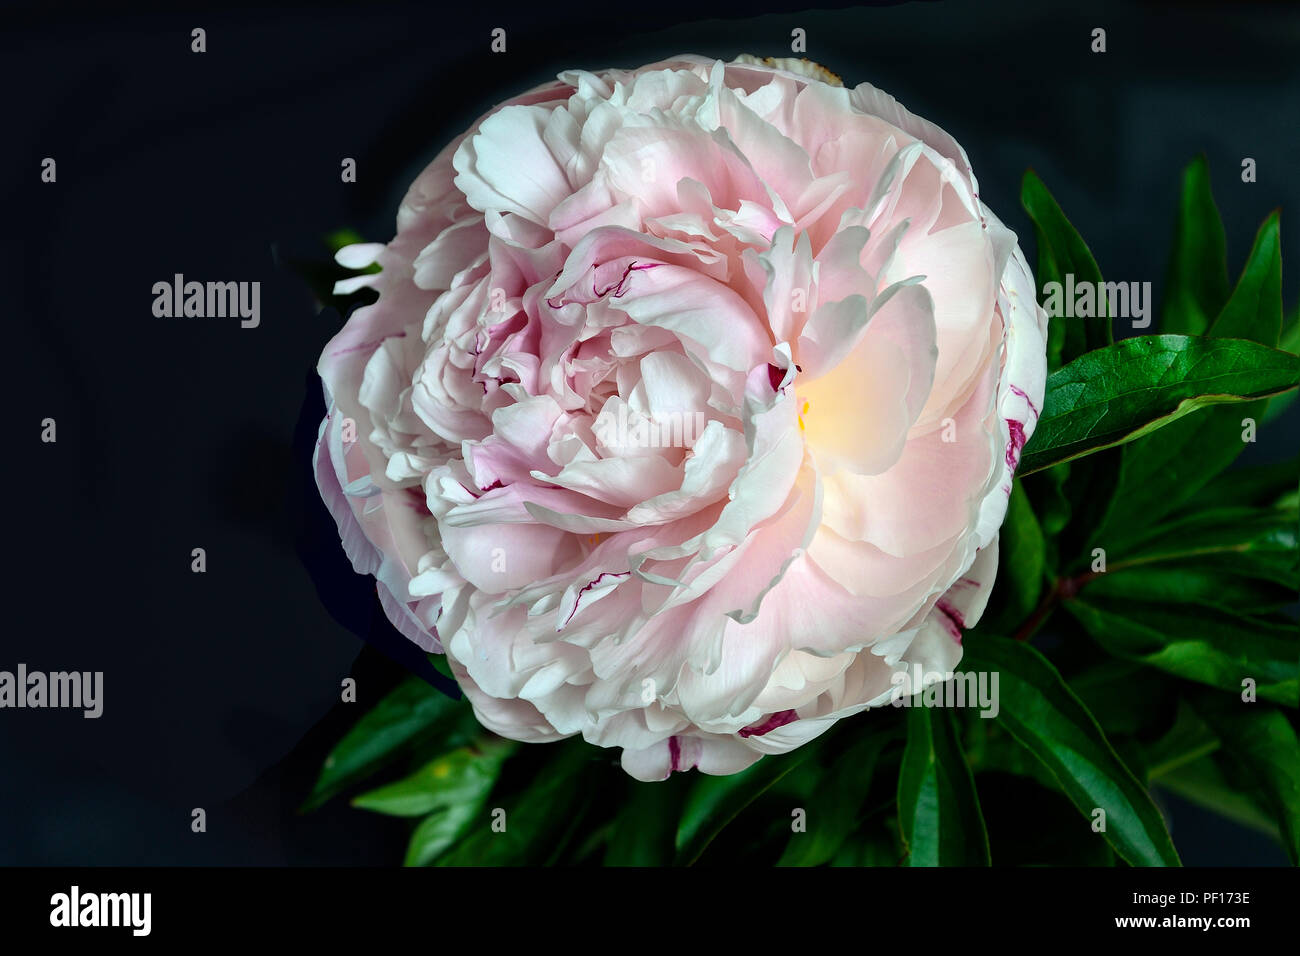 Bella dolce bianco-rosa peonia close up su uno sfondo nero isolato con foglie verdi. Fiori con petali delicati e delicato aroma. Concetto Foto Stock